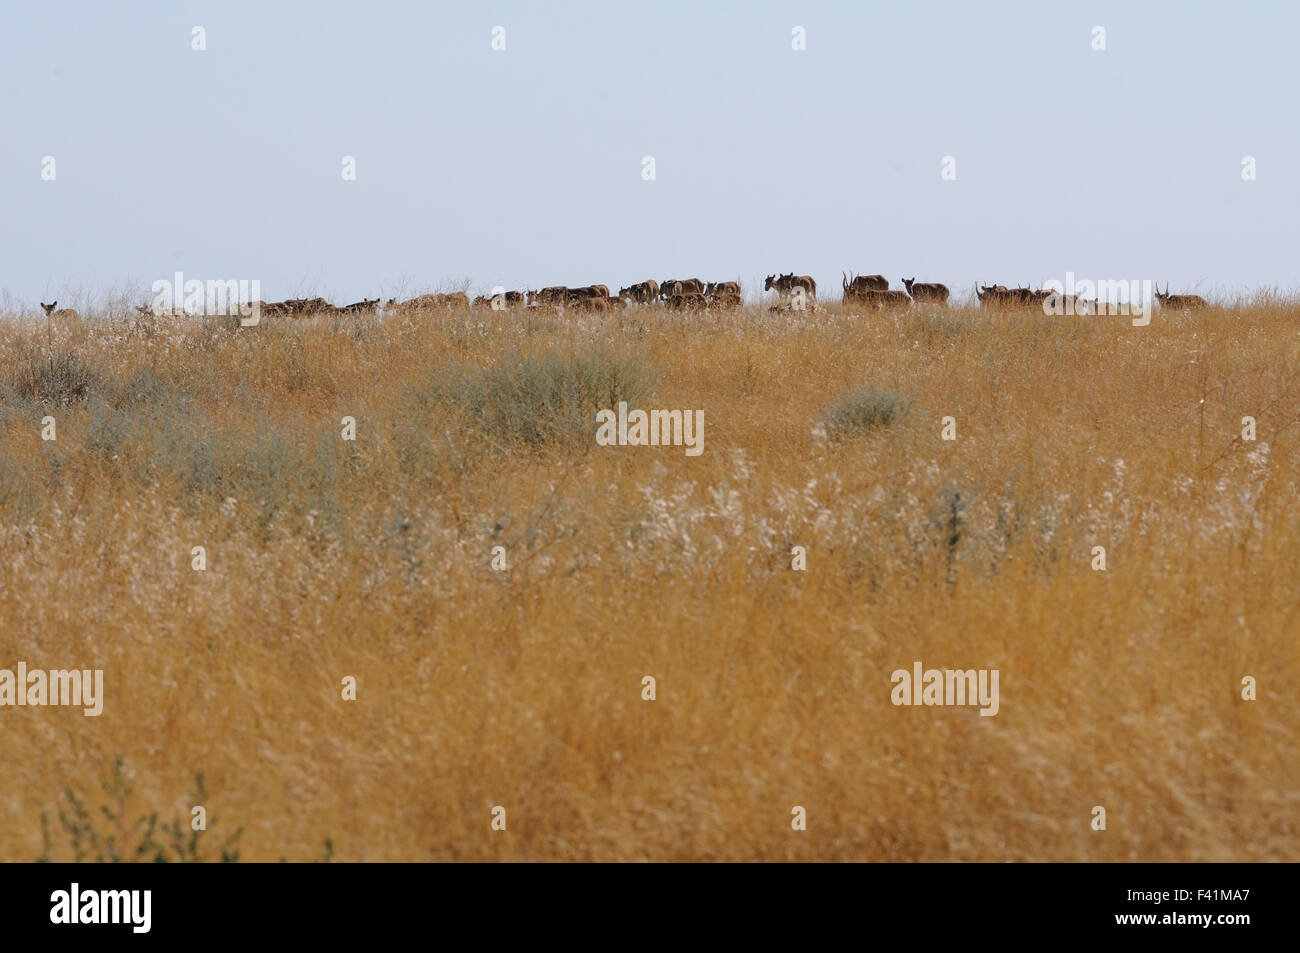 Critically endangered wild Saiga antelopes in steppe. Stock Photo